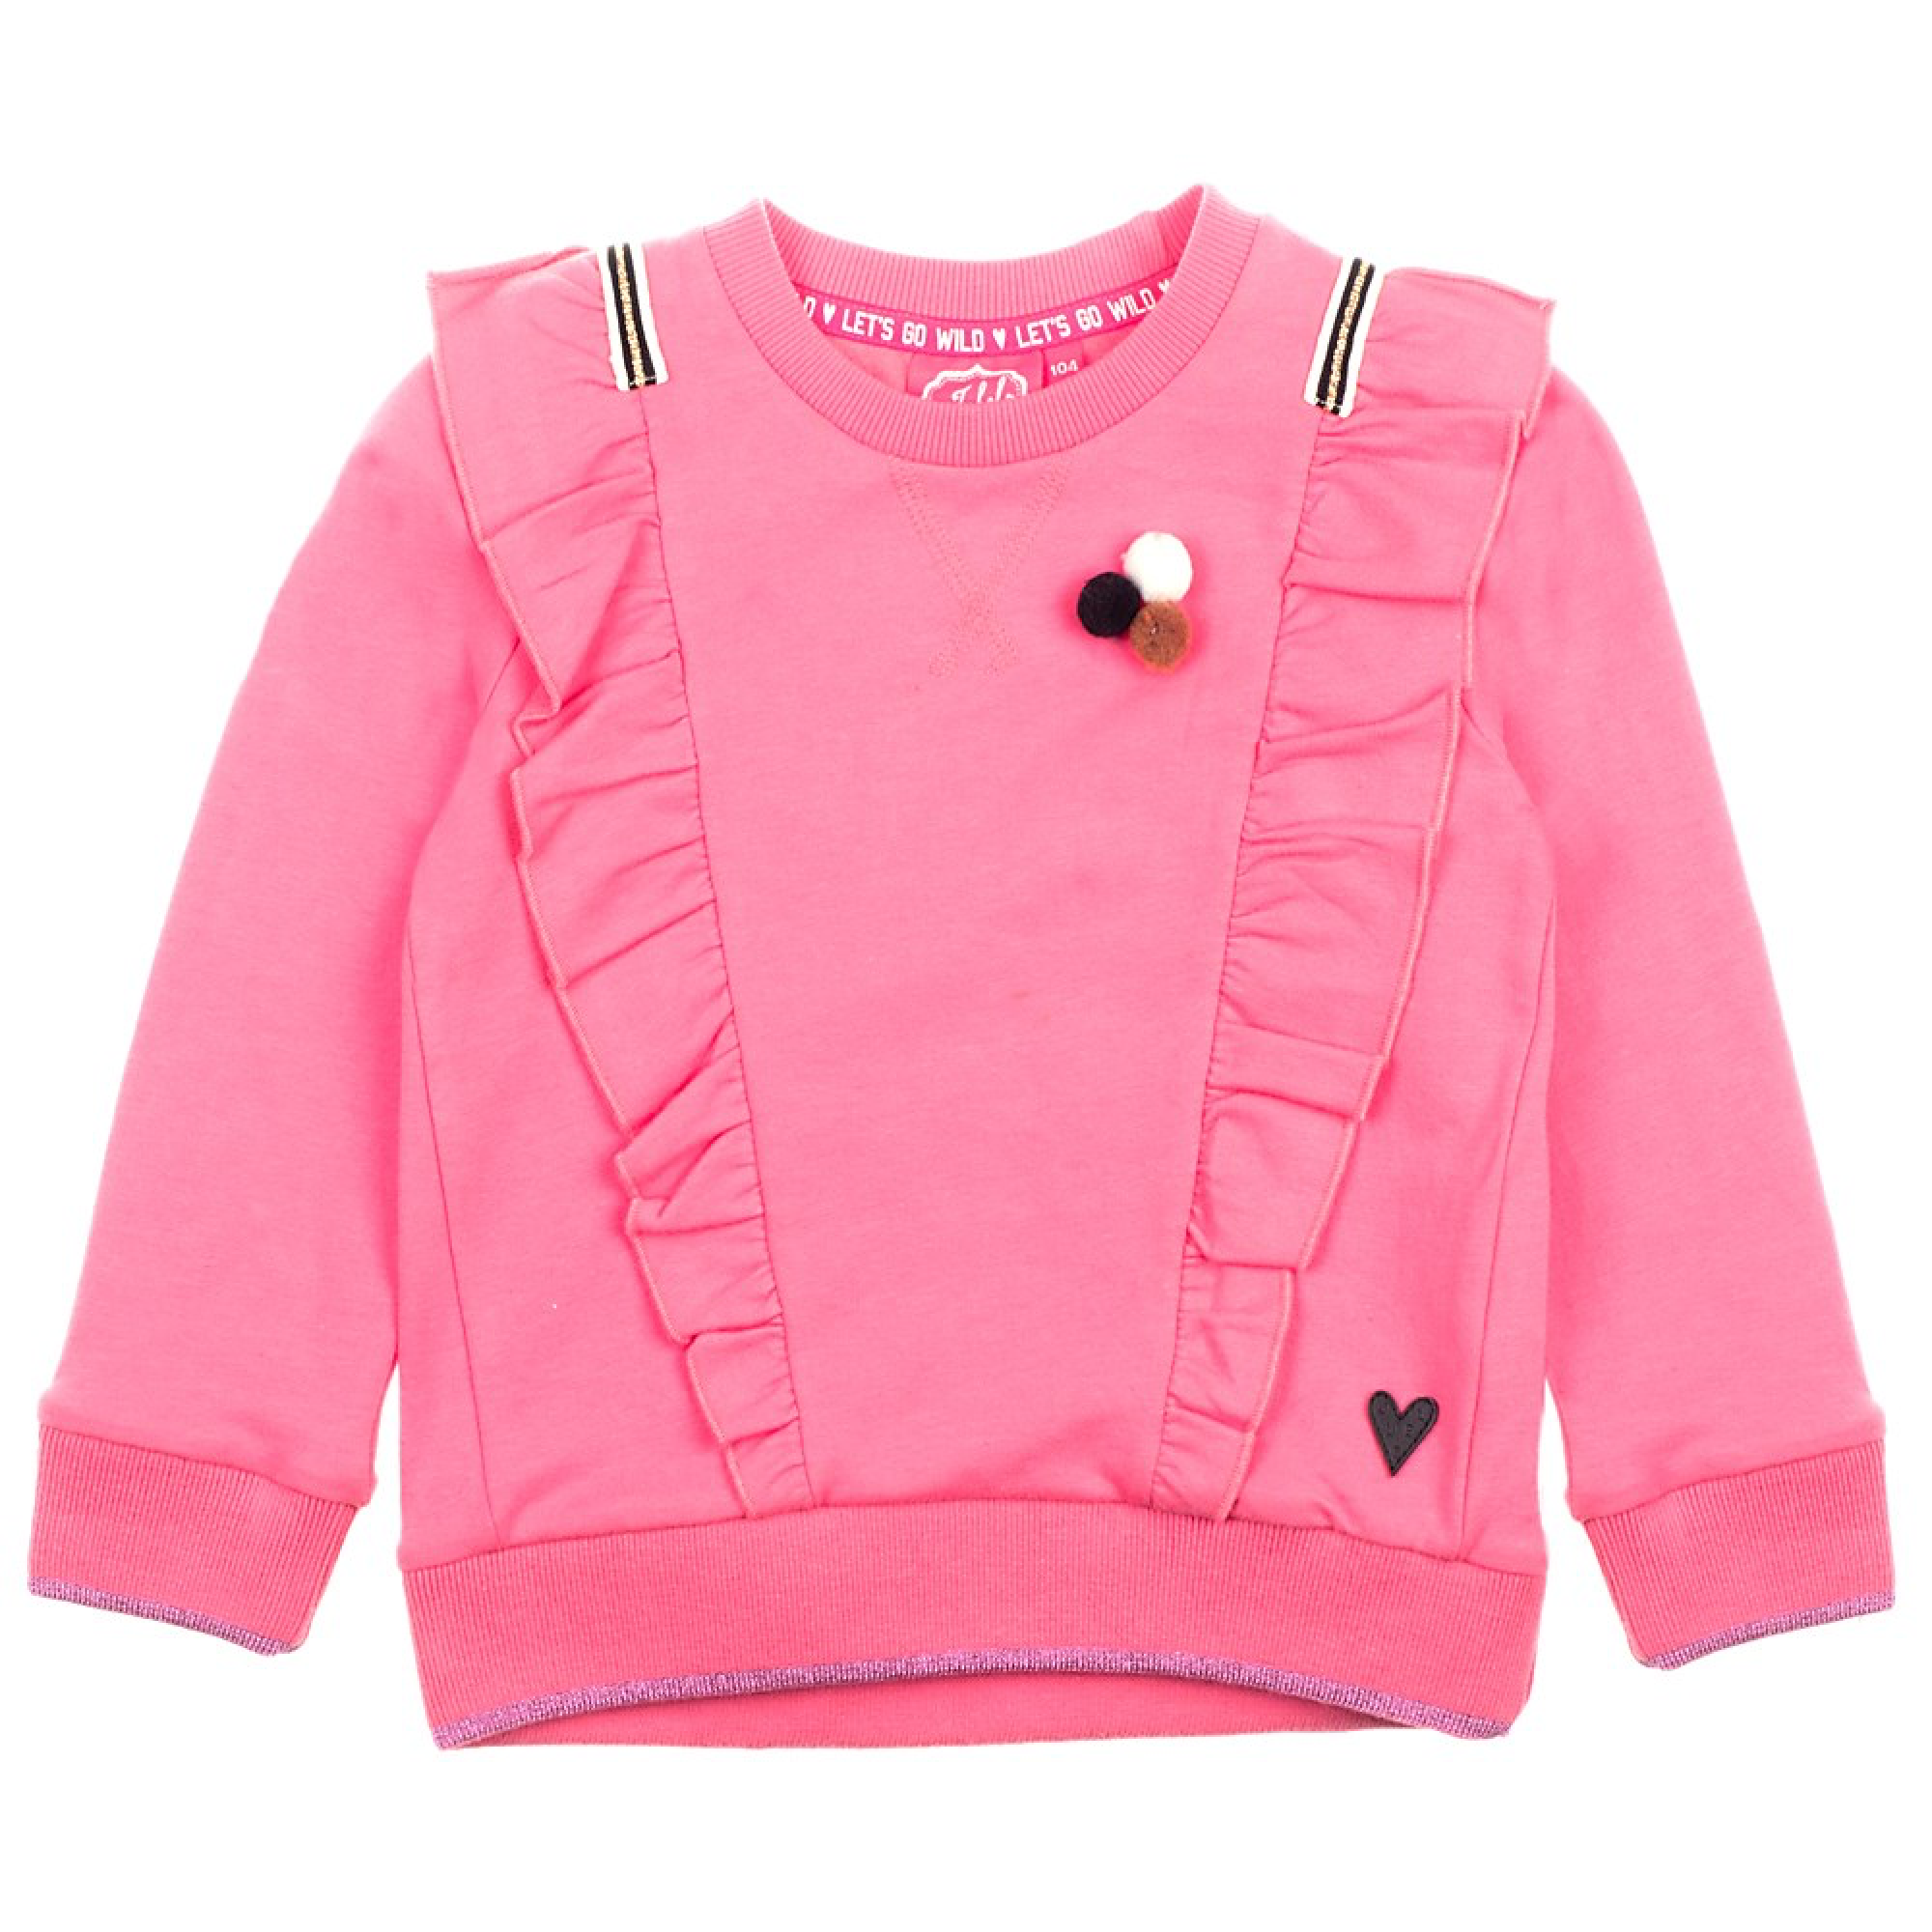 Meisjes Sweater ruches - Animal Attitude van Jubel in de kleur Roze in maat 140.